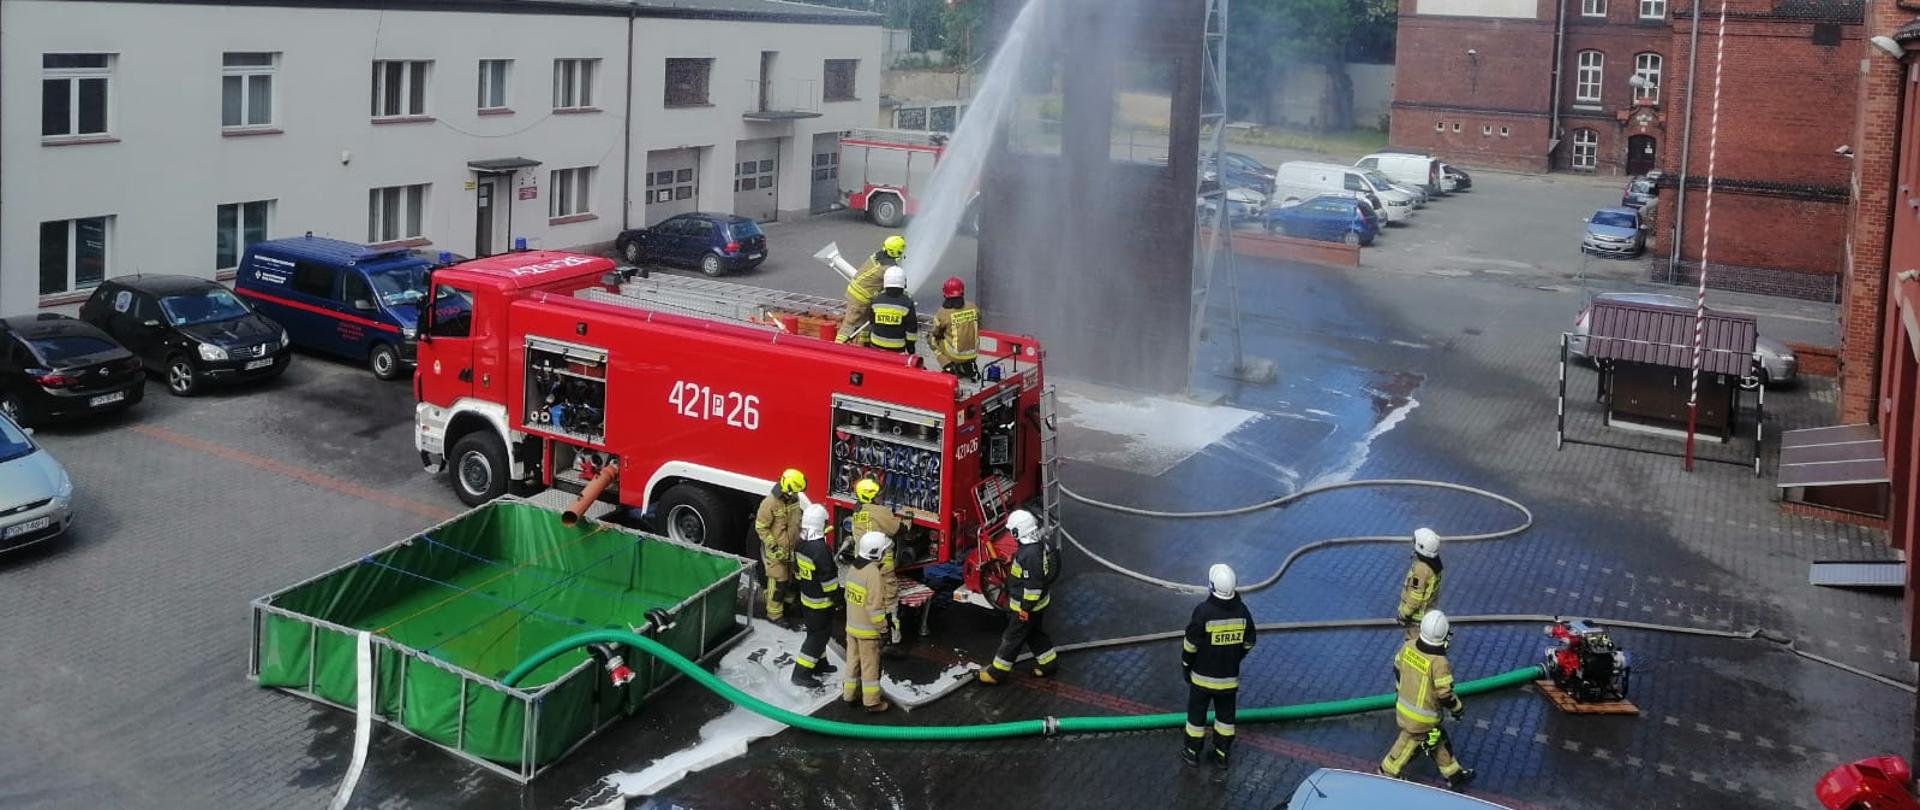 Na zdjęciu widać czerwony samochód strażacki z którego podawana jest woda przy użyciu działka wodnego znajdującego się na dachu pojazdu. Działko obsługuje trzech strażaków. Obok samochodu stoi zielony zbiornik wodny. Obok samochodu znajdują się ćwiczący strażacy